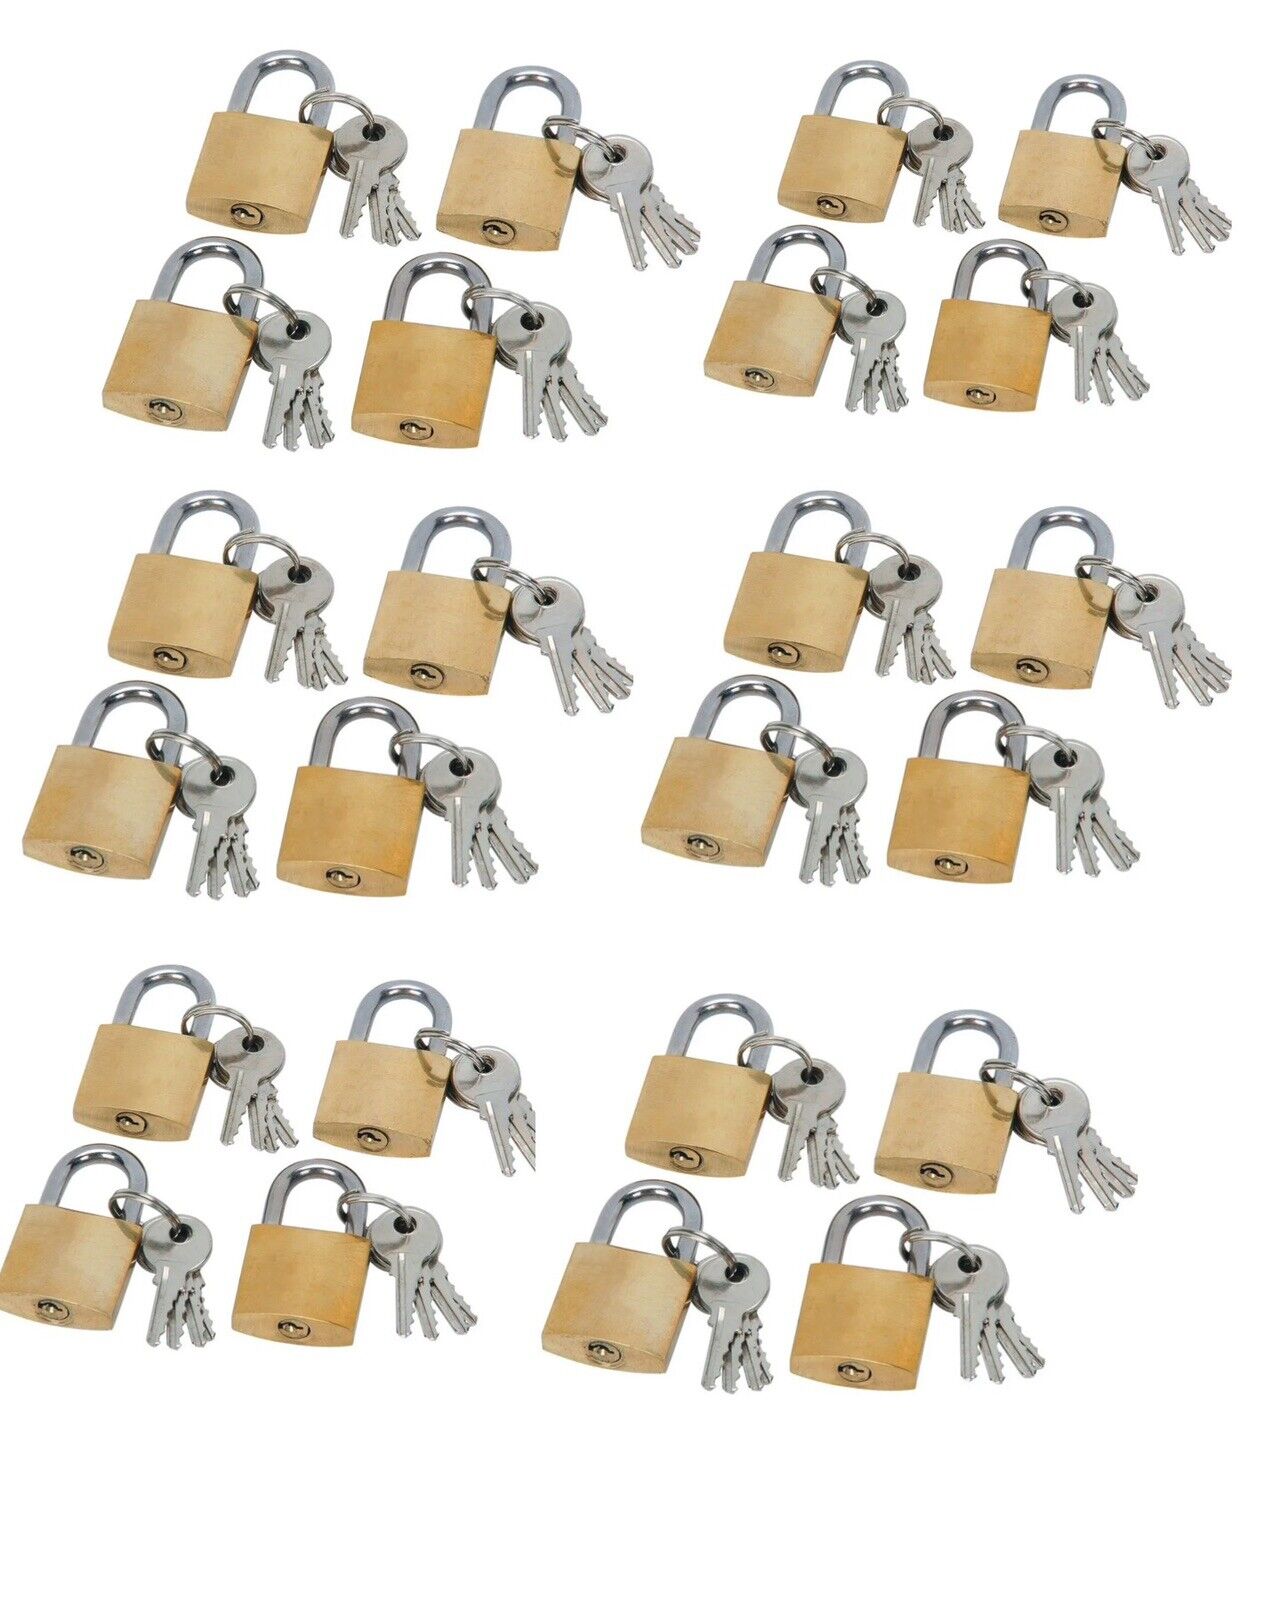 24-Pack Mini Padlock Luggage Locks with Keys, 20mm